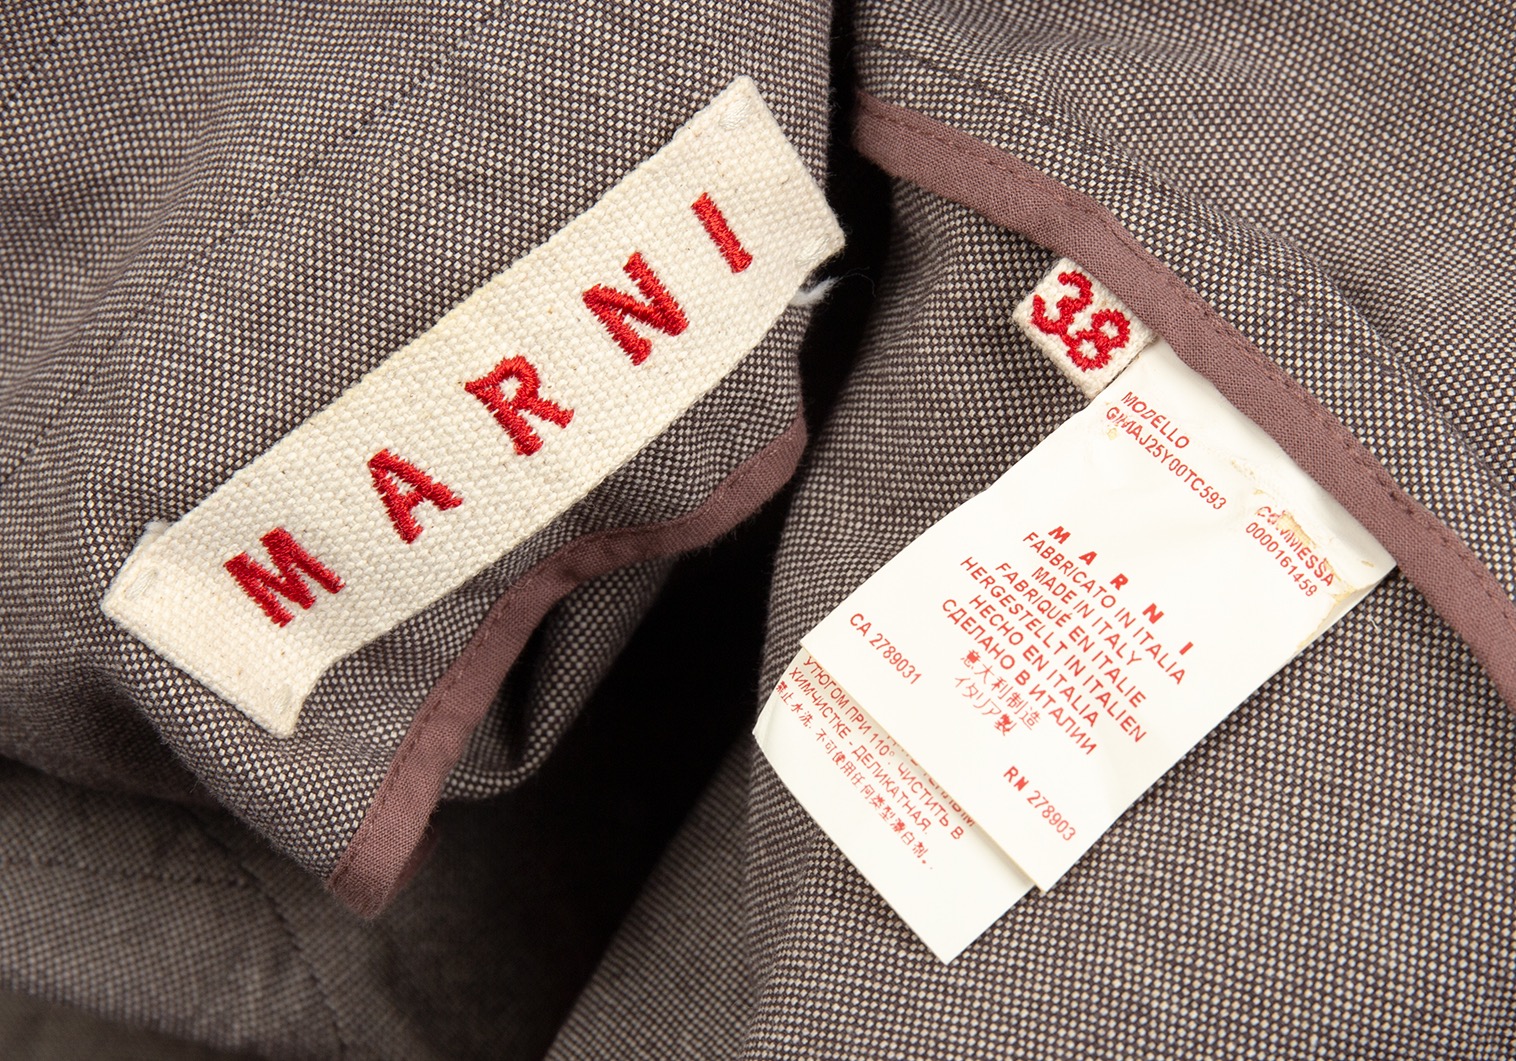 マルニ MARNI ランダムプリーツスカート ネイビー サイズ40 ネイビー